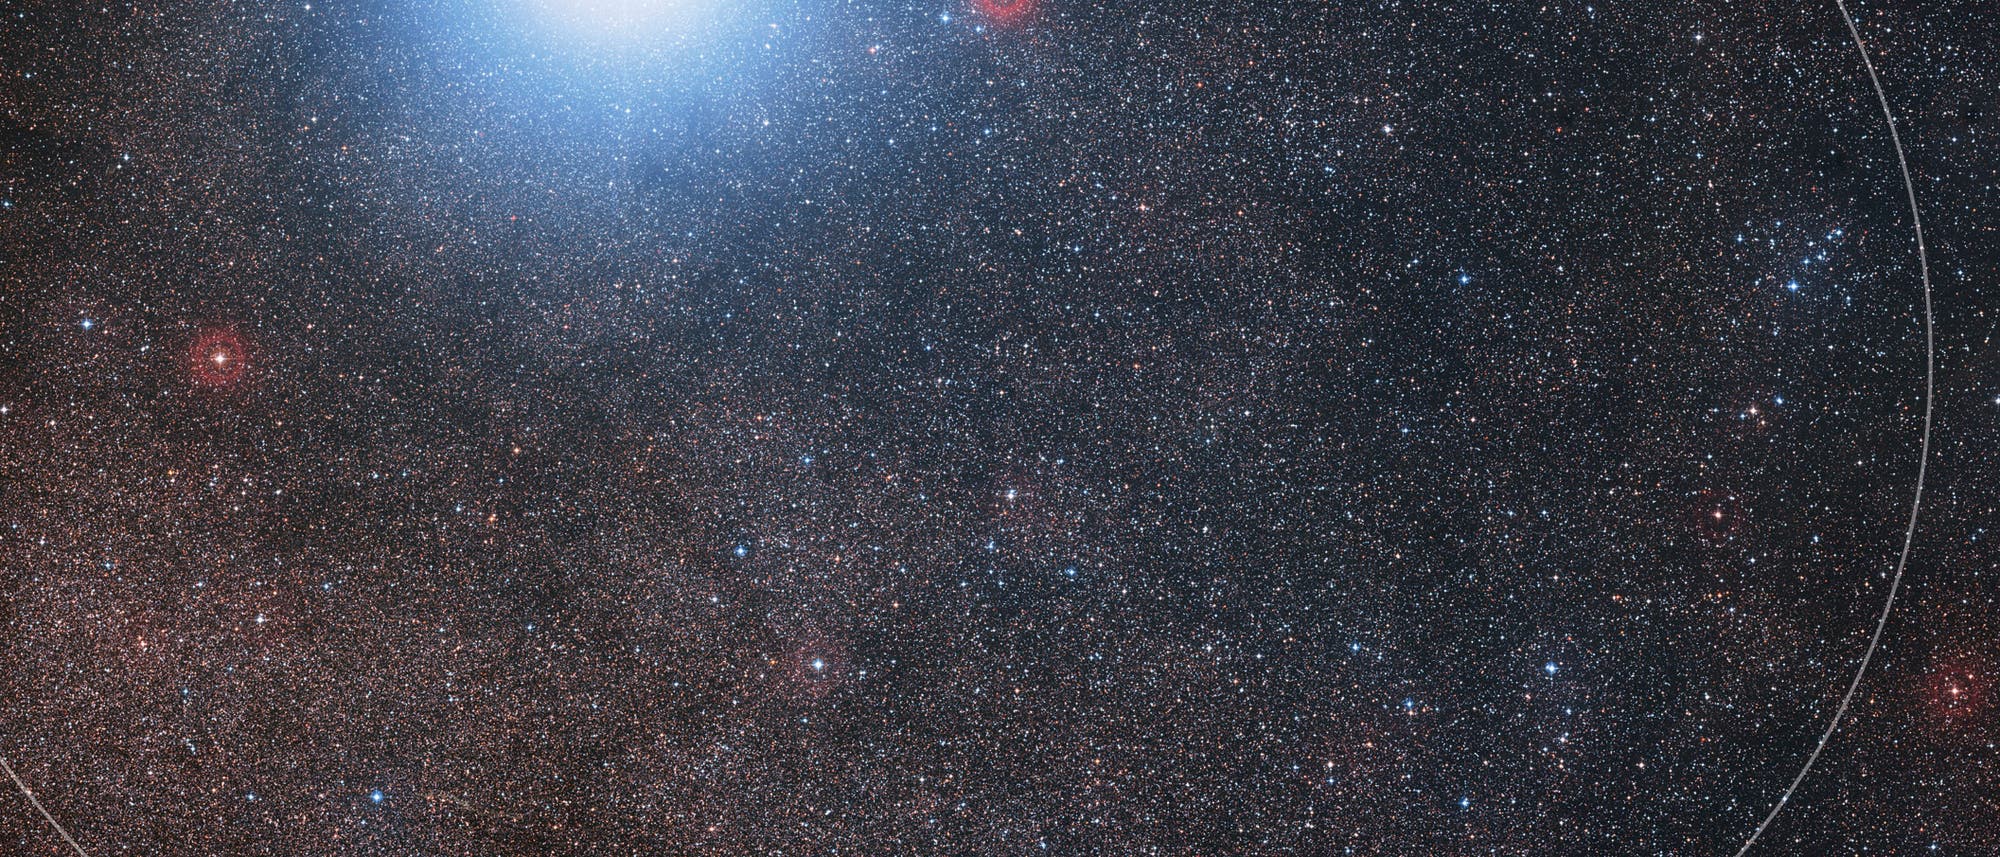 Der Doppelstern Alpha Centauri wird von Proxima Centauri auf einer eliptischen Bahn umkreist.